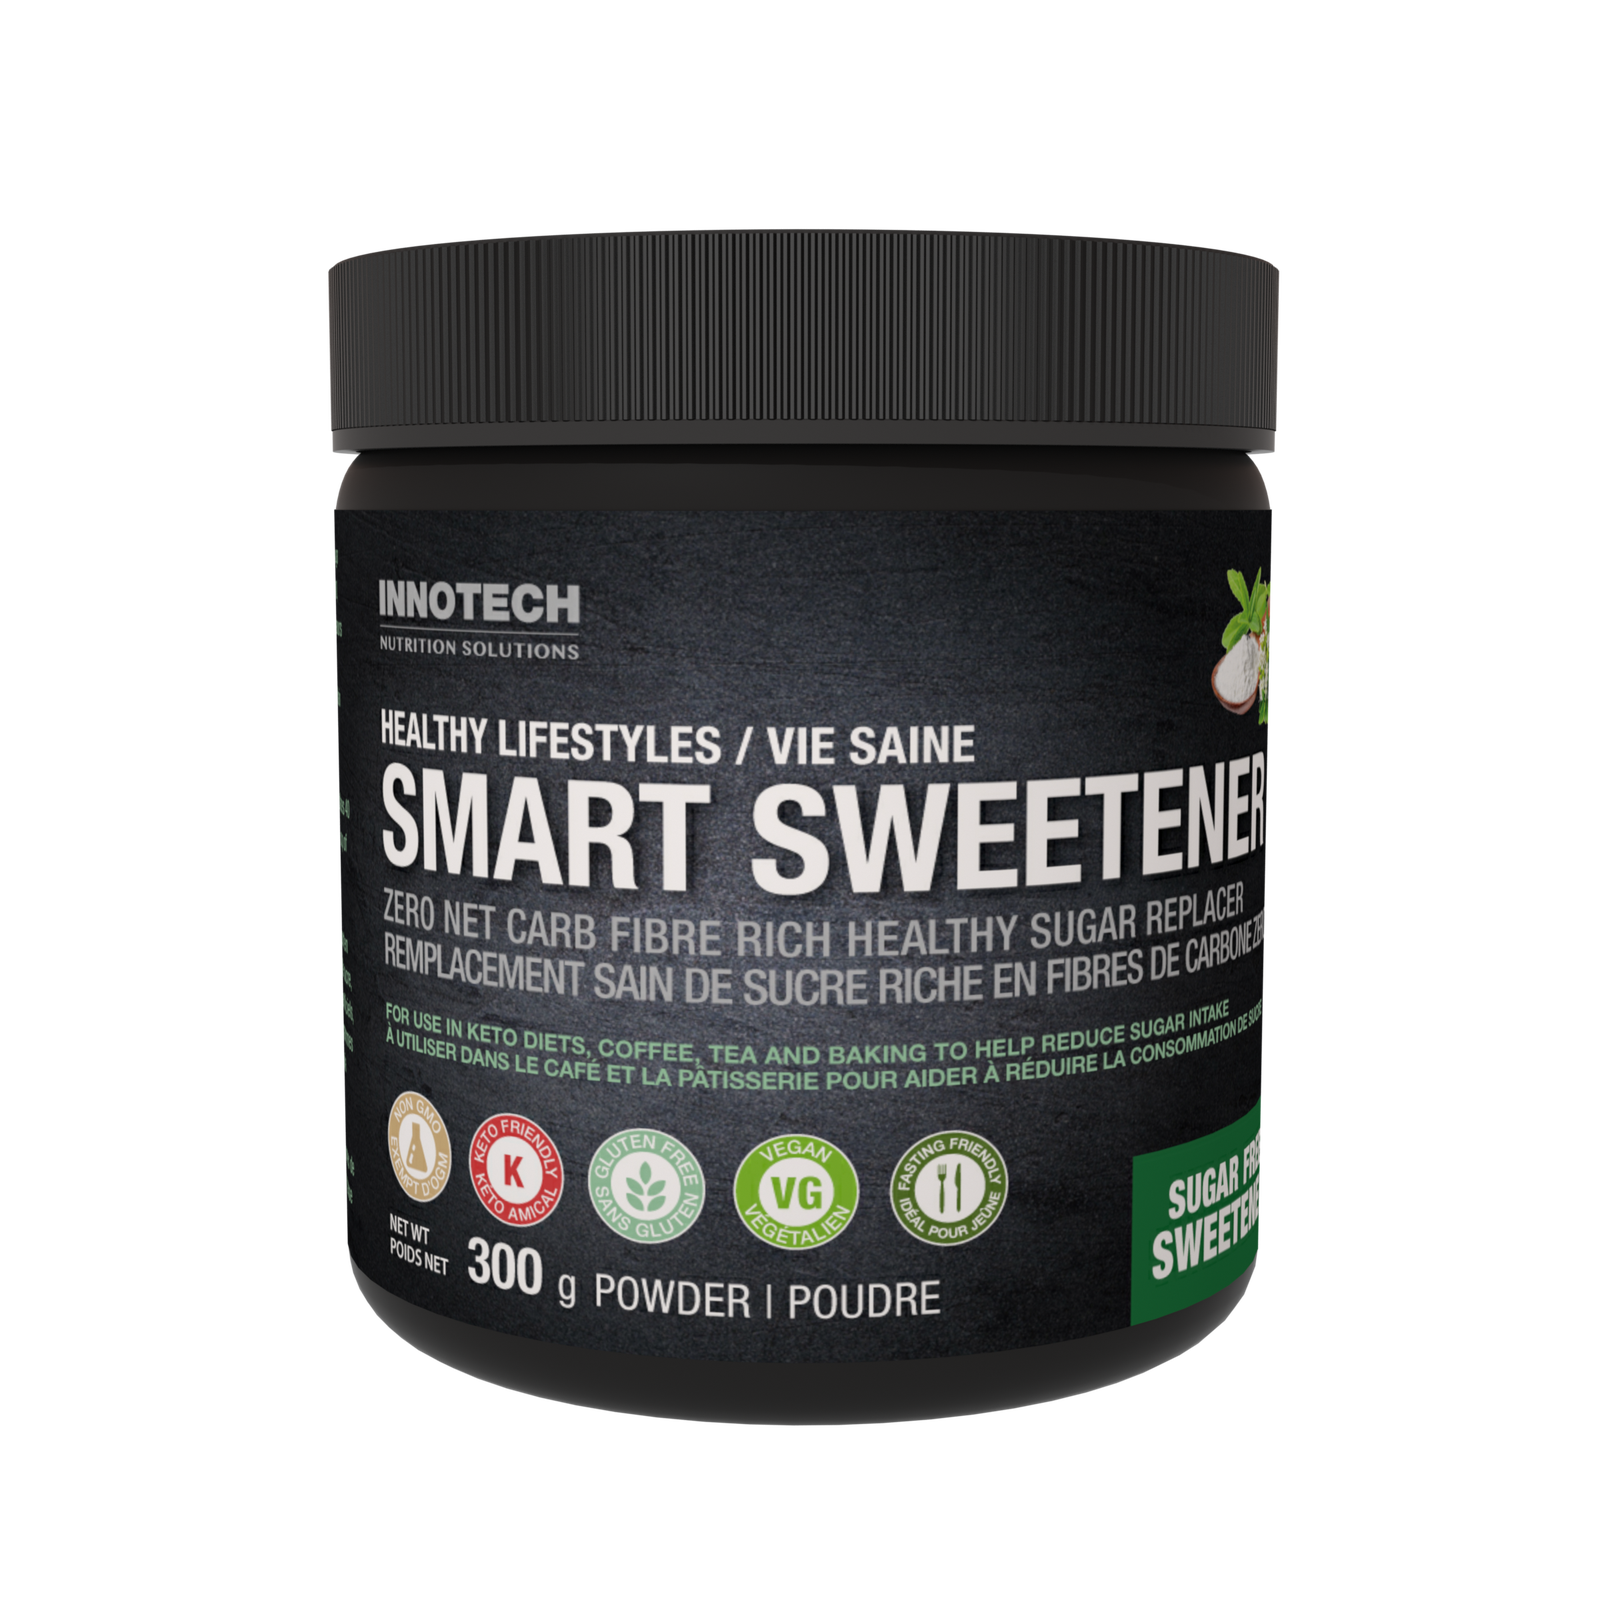 Chất làm ngọt lành mạnh Innotech Nutrition Healthy Lifestyles Smart Sweetener 5